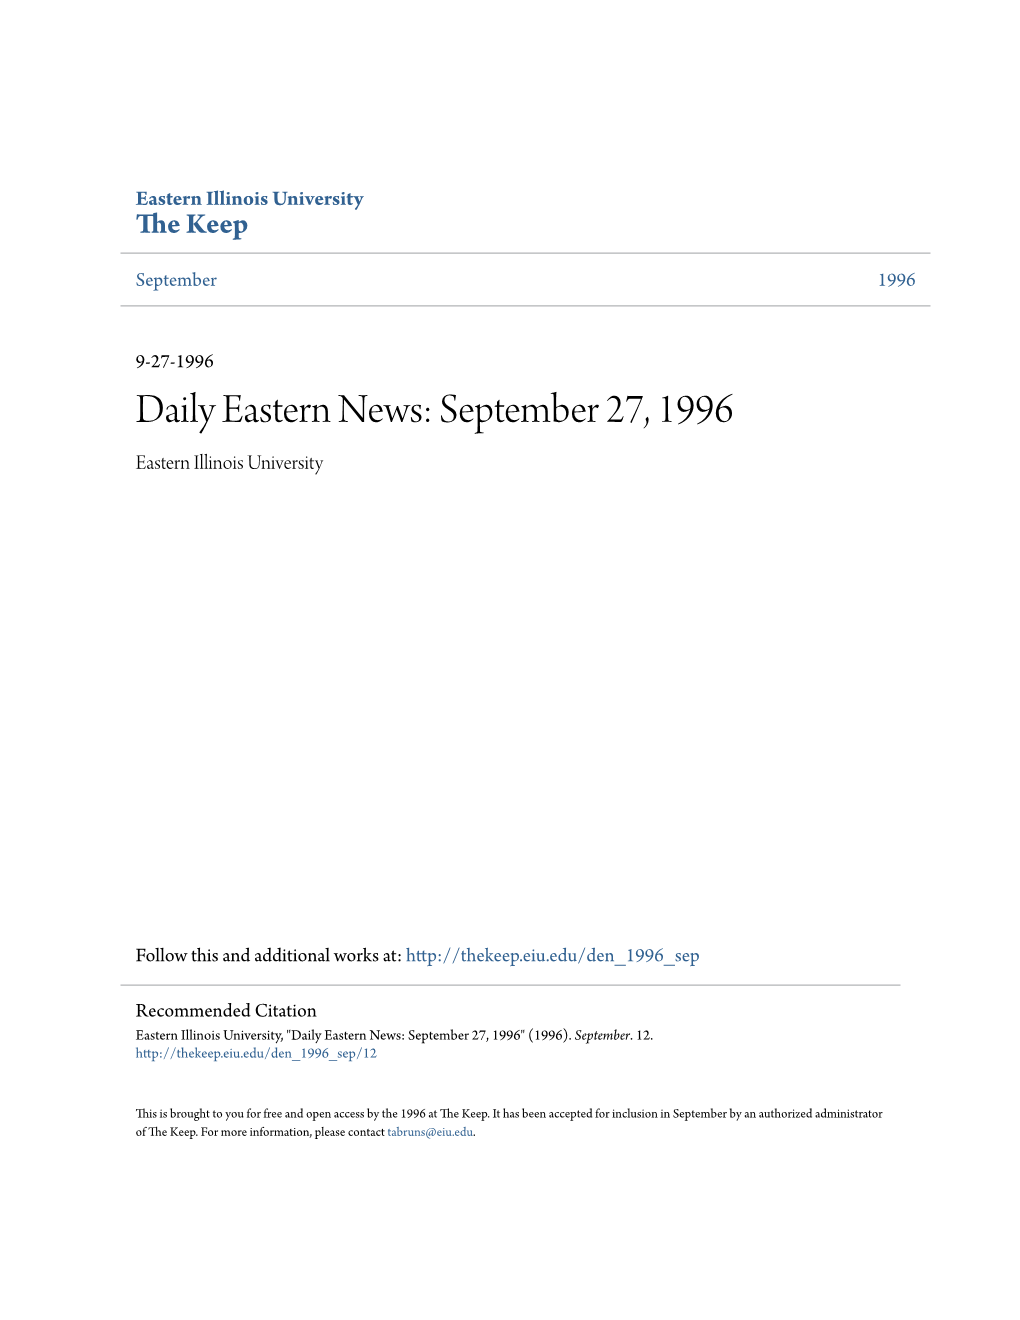 Daily Eastern News: September 27, 1996 Eastern Illinois University